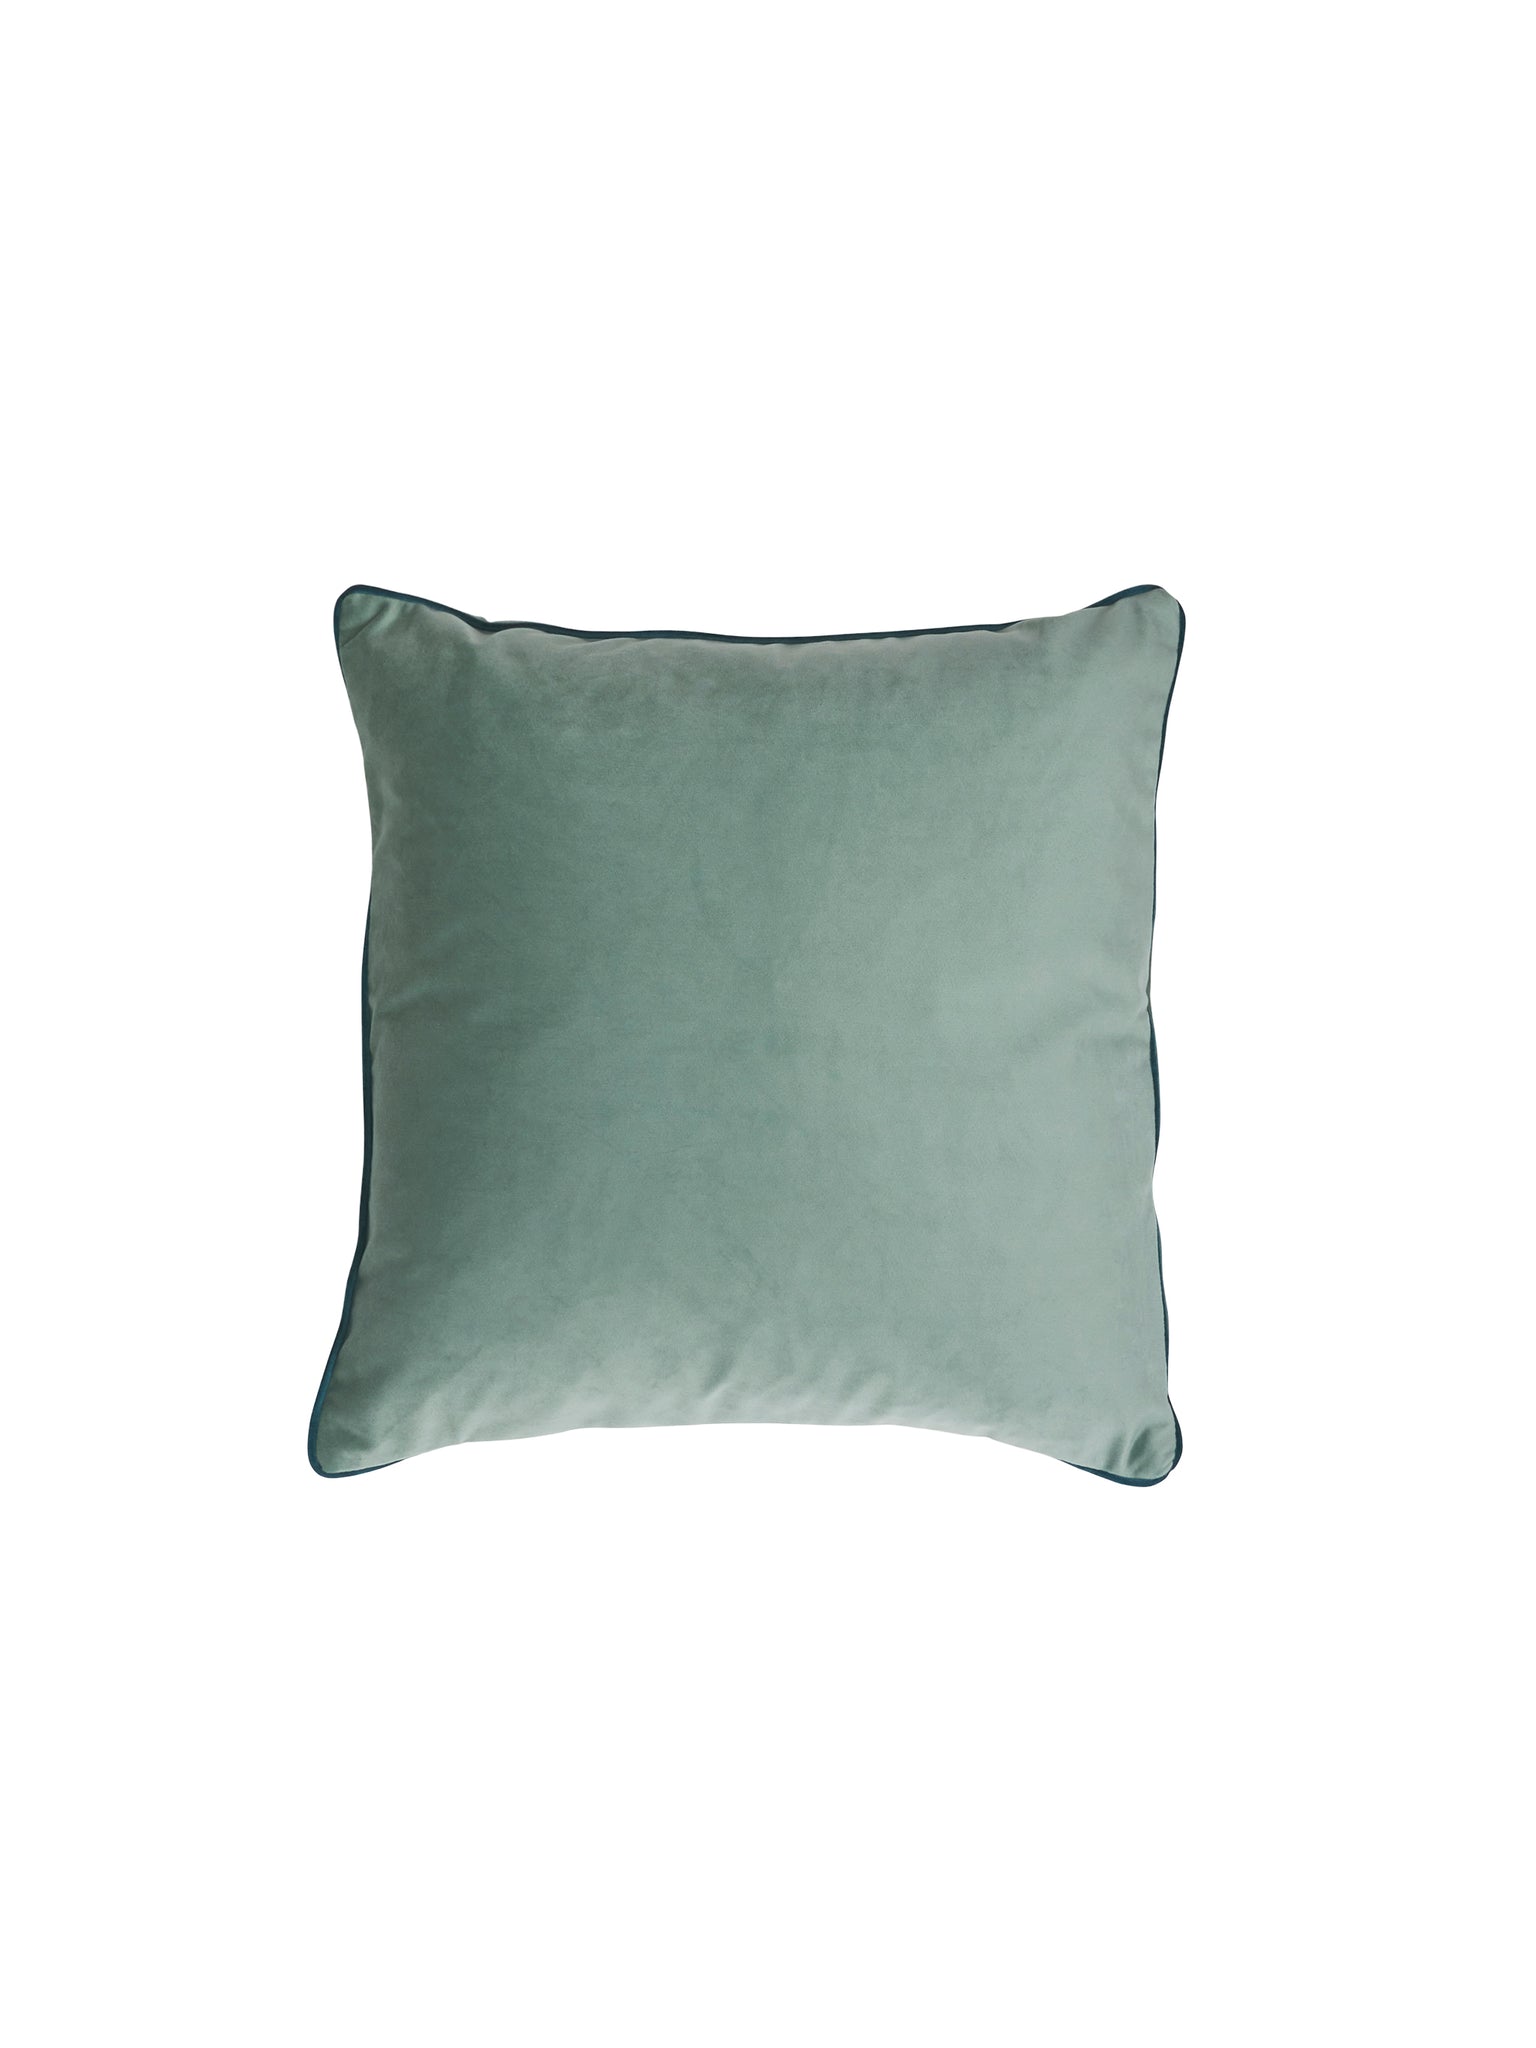 Teal Velvet Pillow 16 Inch Weston Table